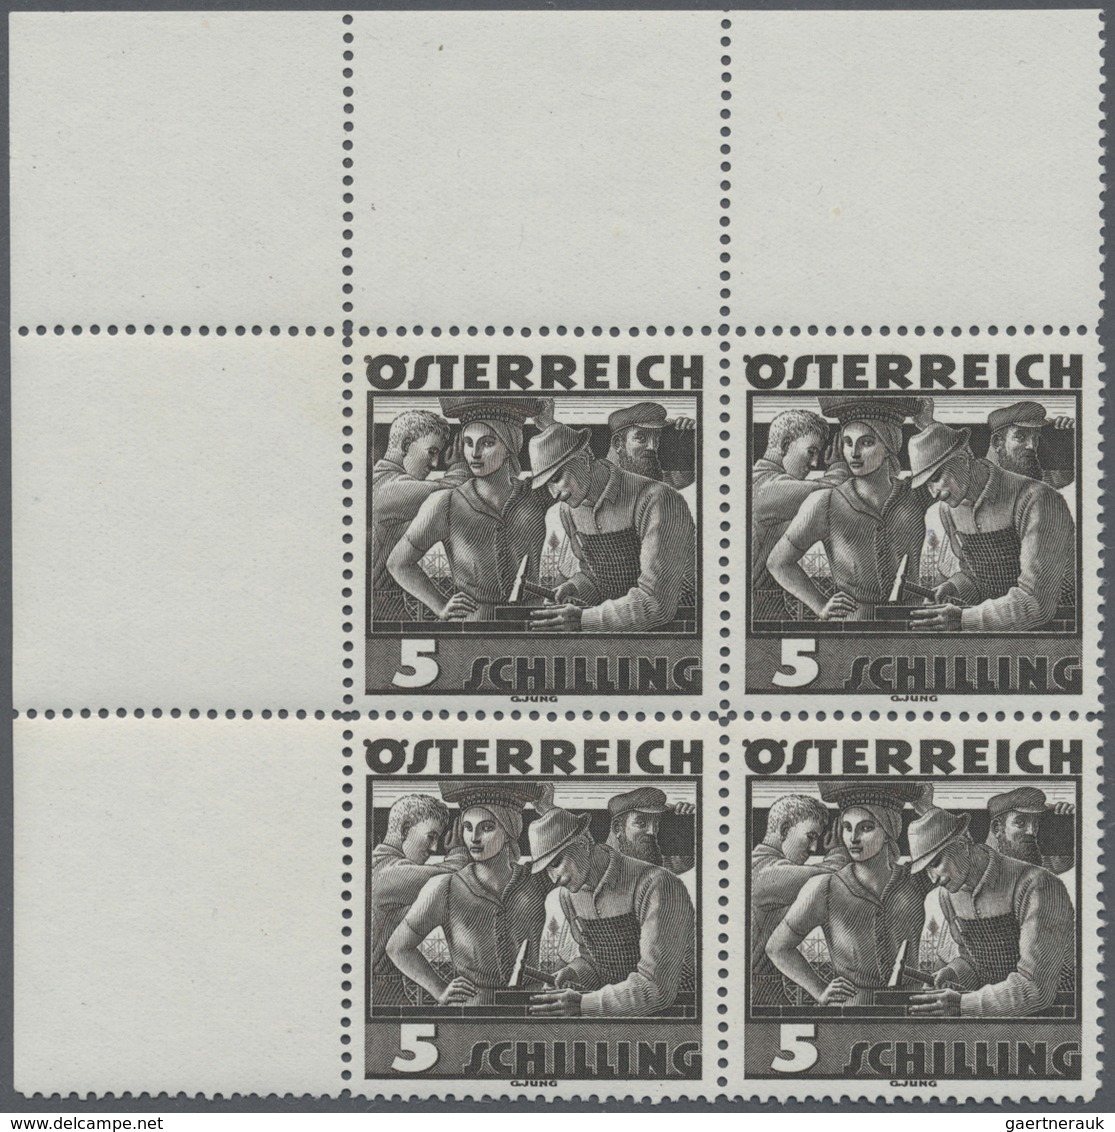 Br/GA/O/**/* Österreich: 1890/1950 (ca.), umfangreiche Sammlung in 12 meißt großen Alben, ab der Ausgabe 1890, be